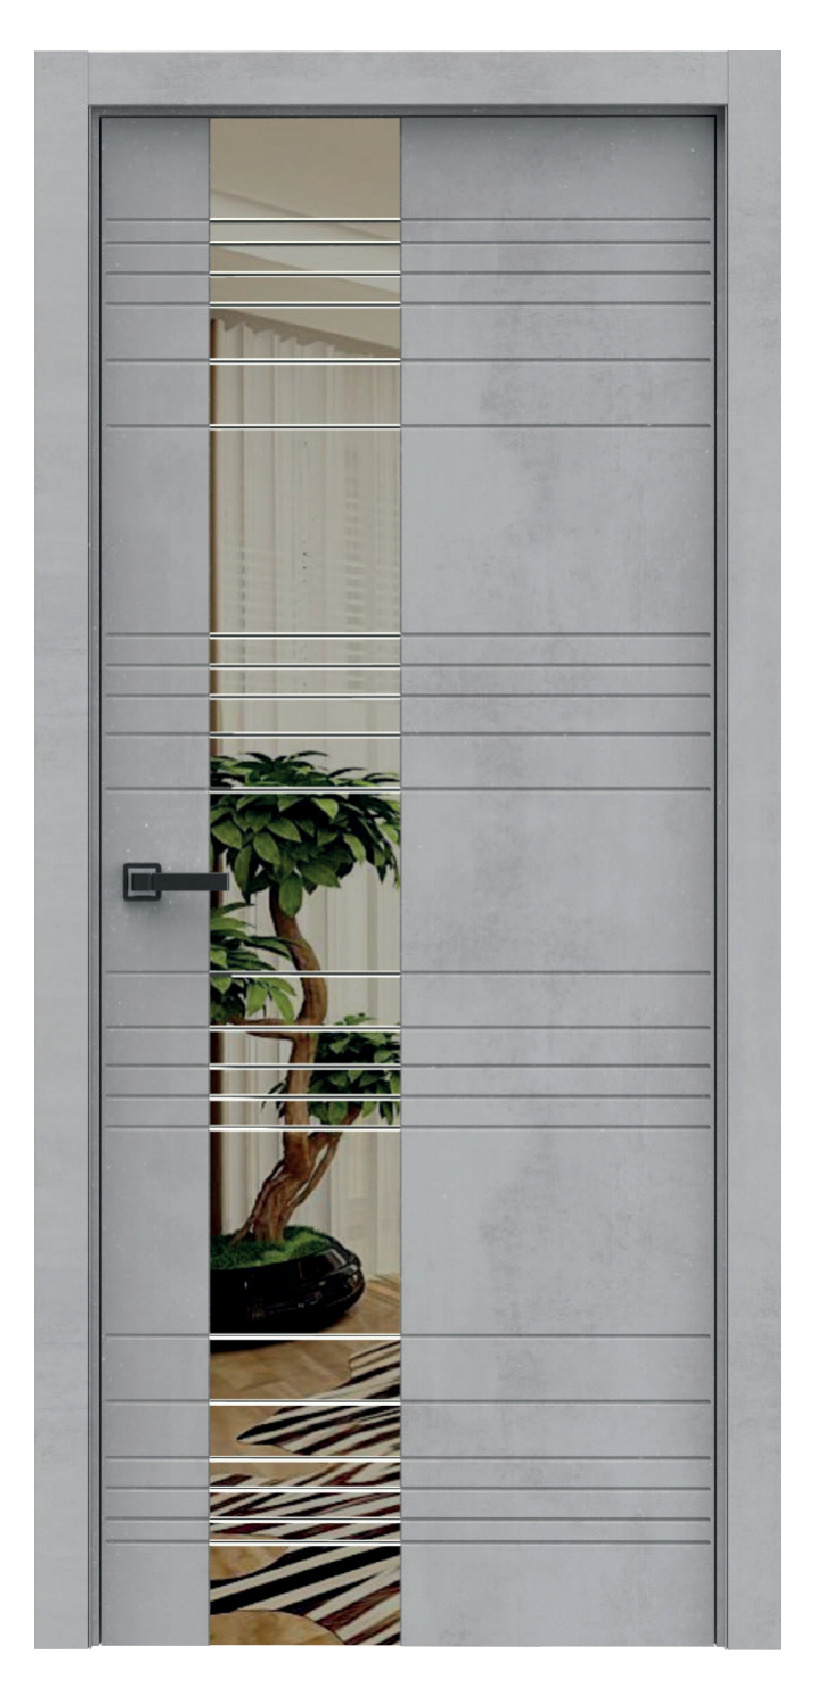 Questdoors Межкомнатная дверь QMS3, арт. 17892 - фото №1